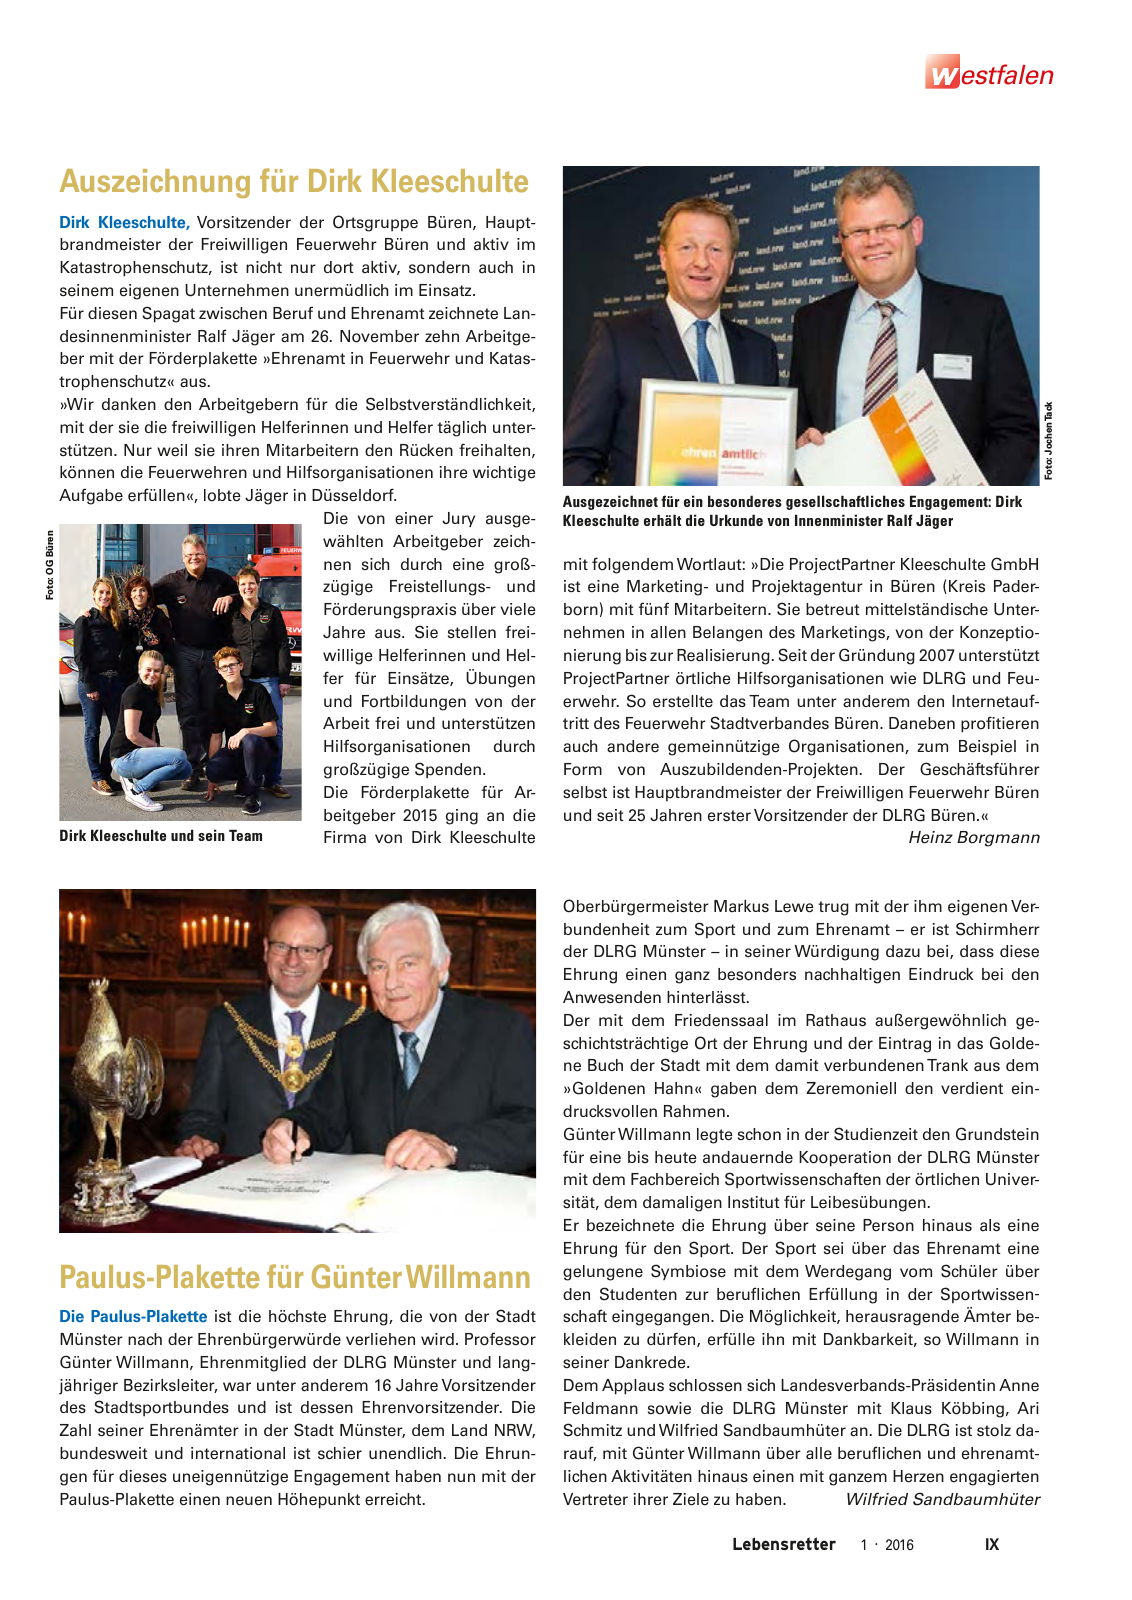 Vorschau Lebensretter 1/2016 - Regionalausgabe Westfalen Seite 11